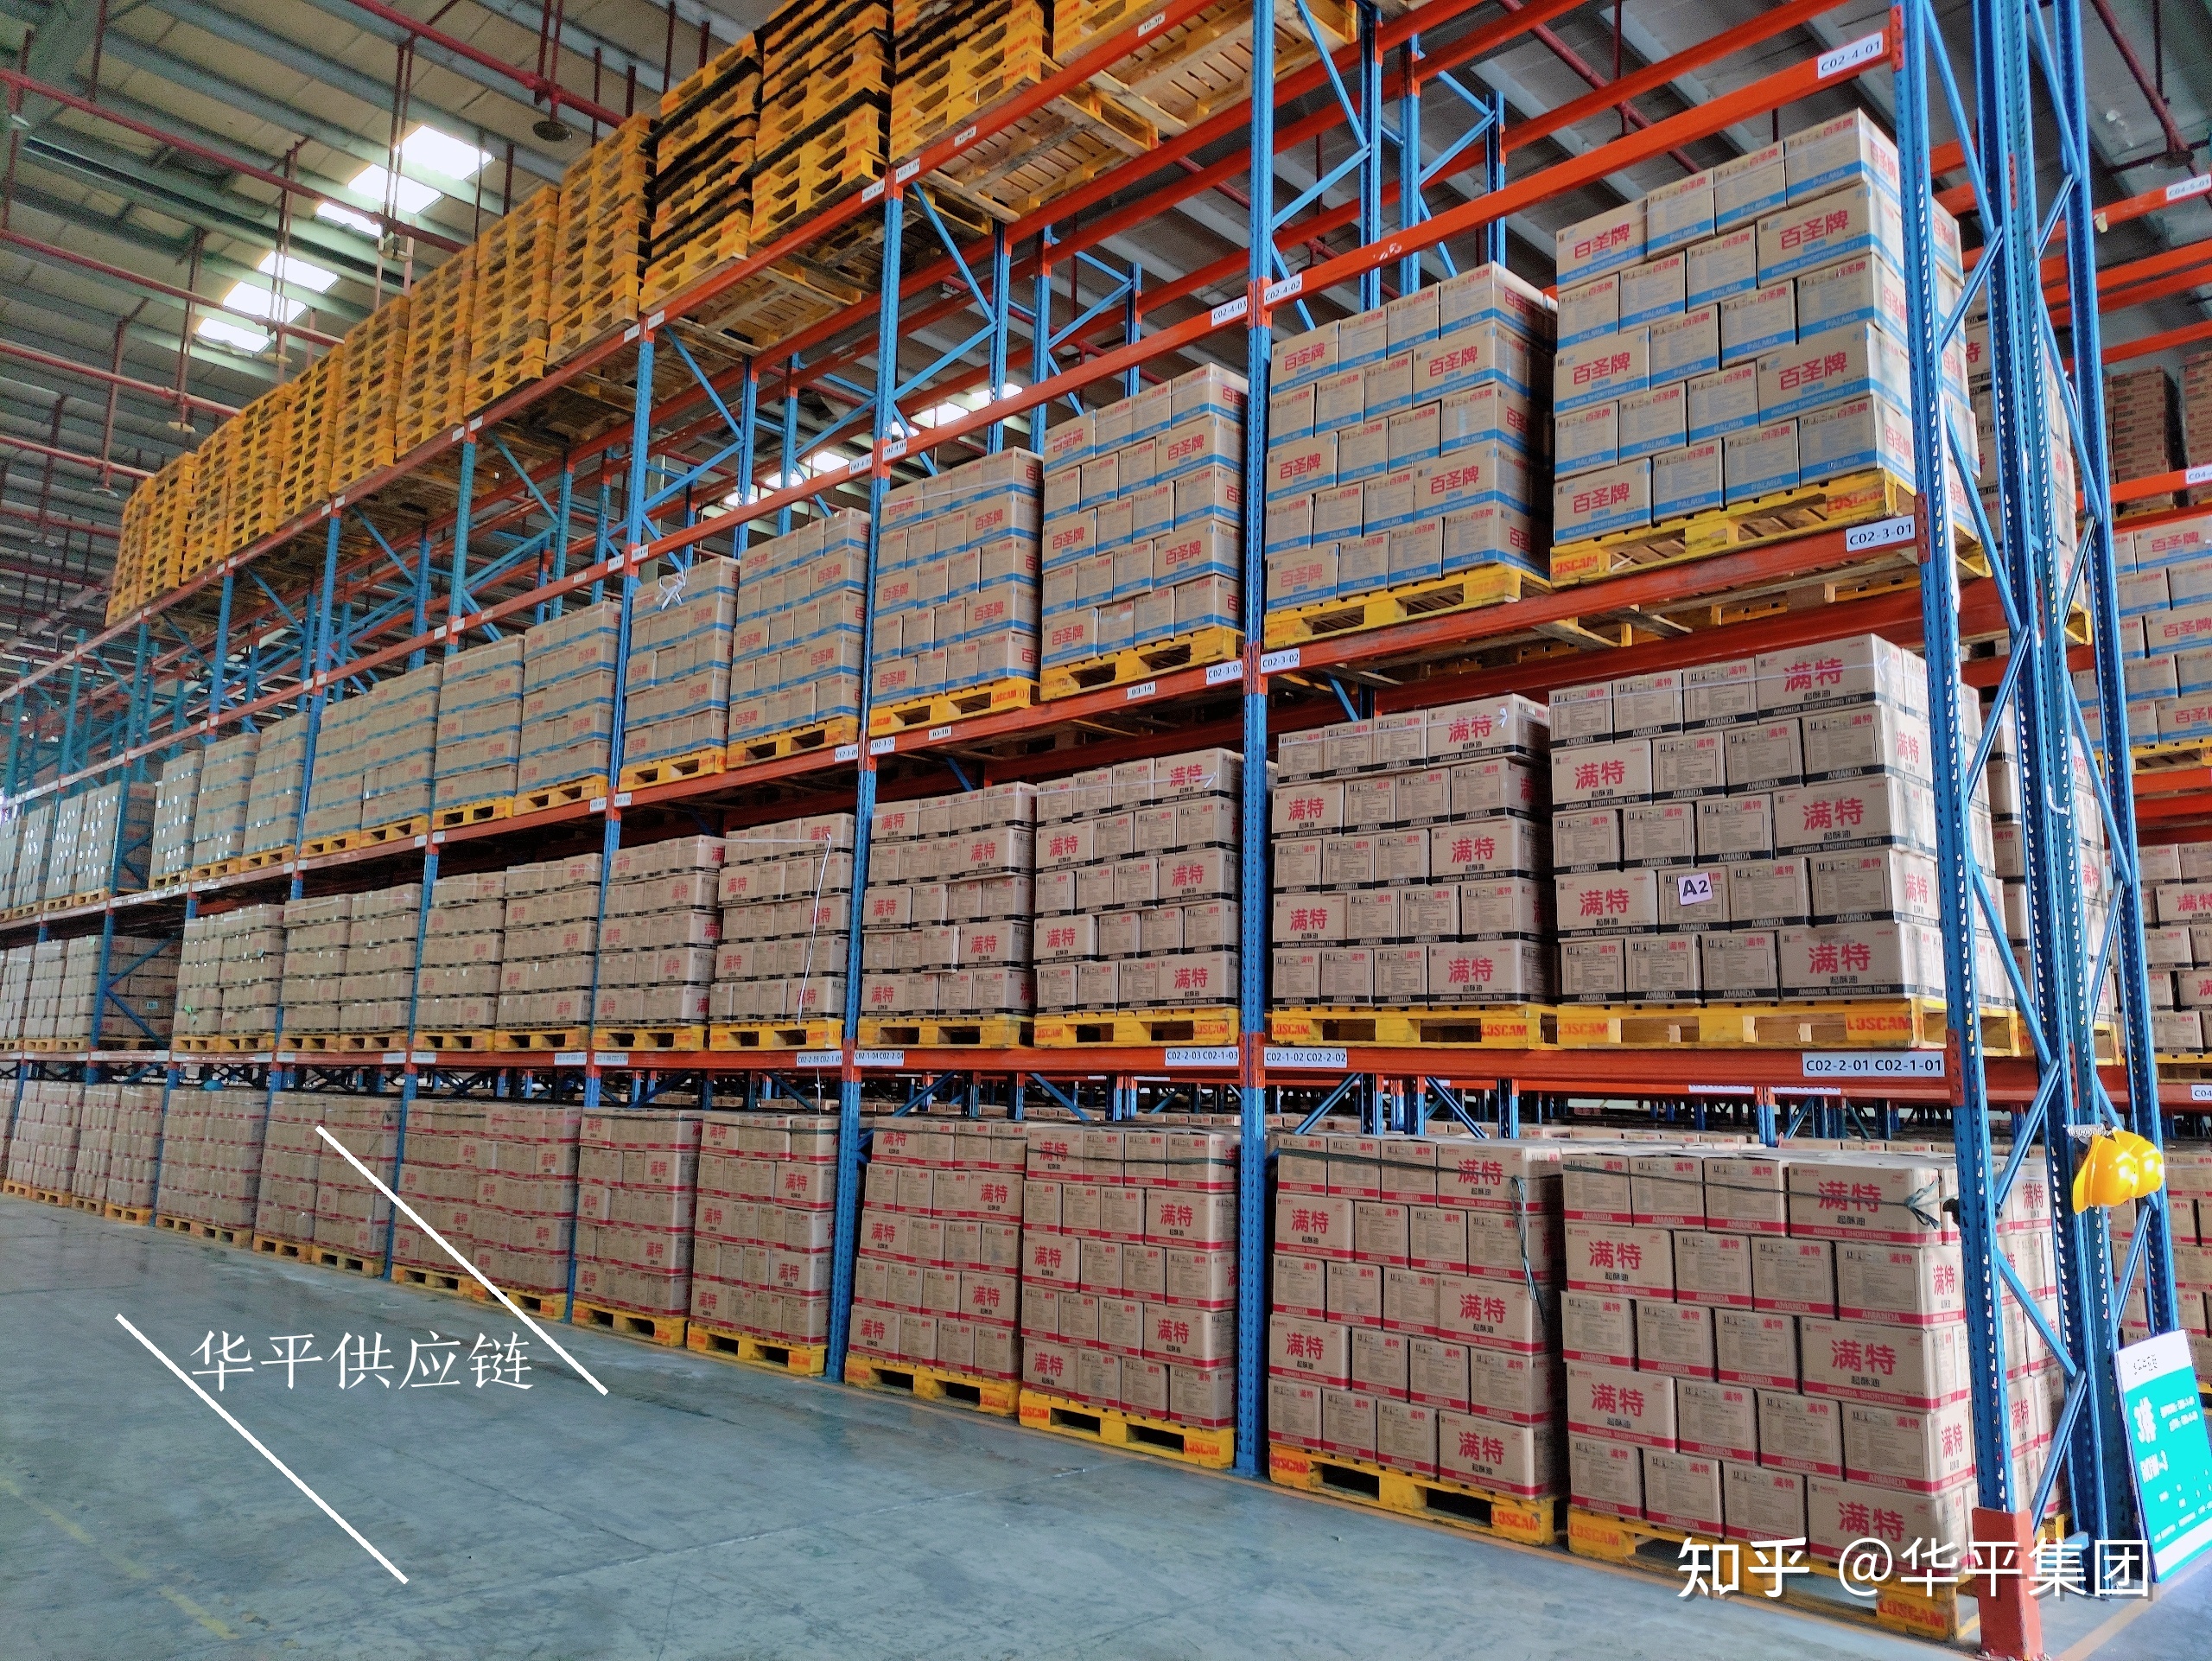 广州预包装食品仓储公司-华平供应链,13年好口碑保证